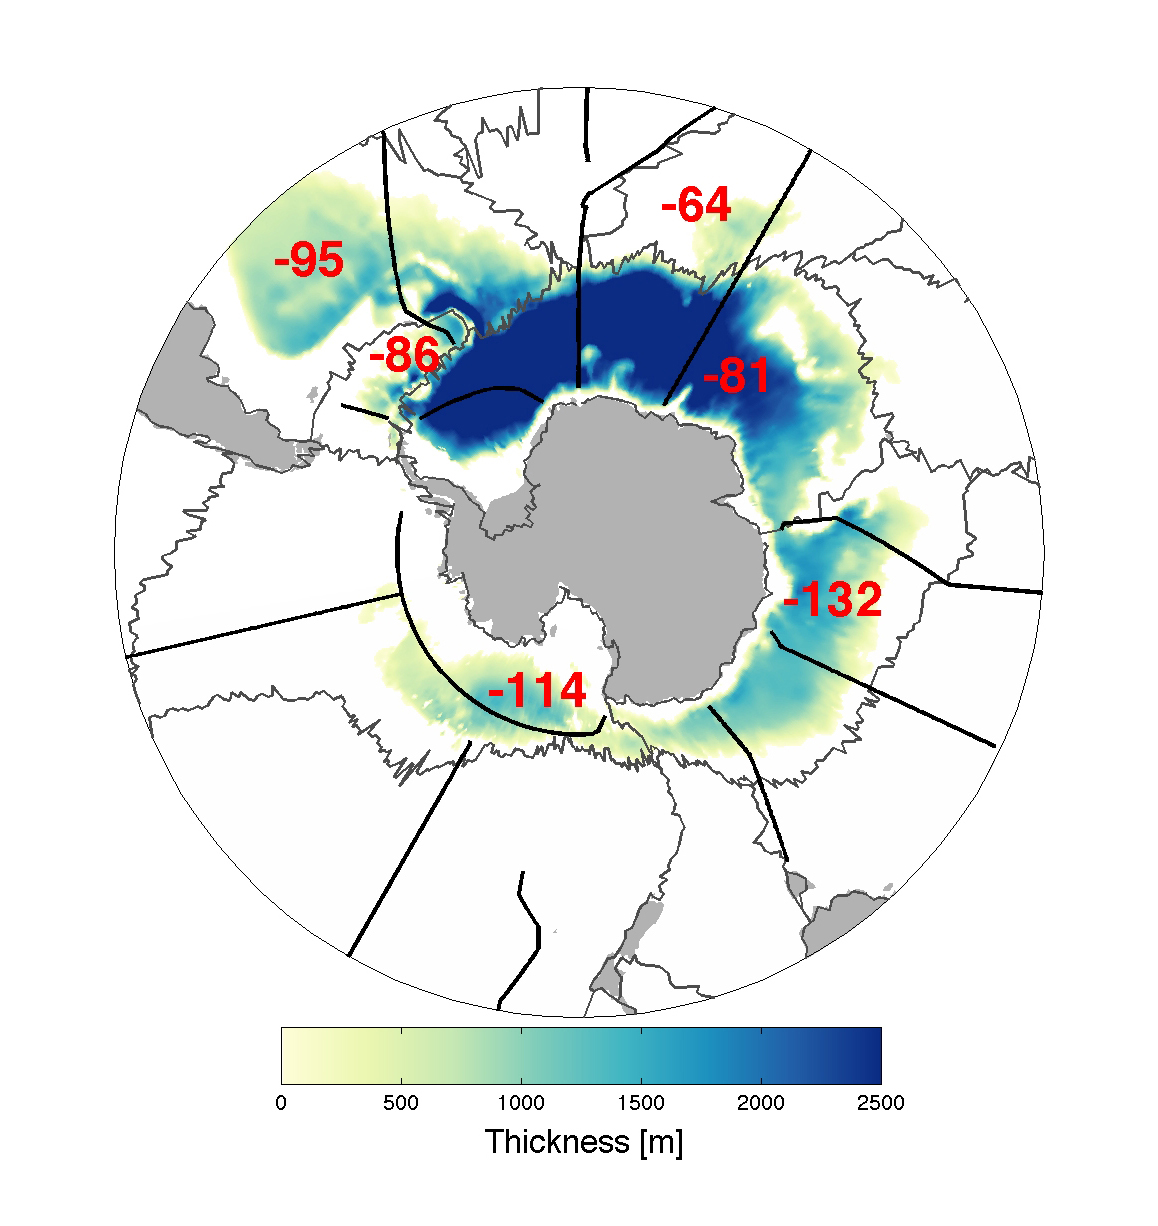 Cartographie de l'épaisseur de la couche d'eau présentant une température de moins de 0 °C dans le fond des océans autour de l'Antarctique (l'eau salée gèle à environ -2 °C). Les chiffres rouges indiquent le nombre de mètres perdus tous les dix ans pour chaque bassin. Ceux-ci sont séparés par les lignes noires. © NOAA 